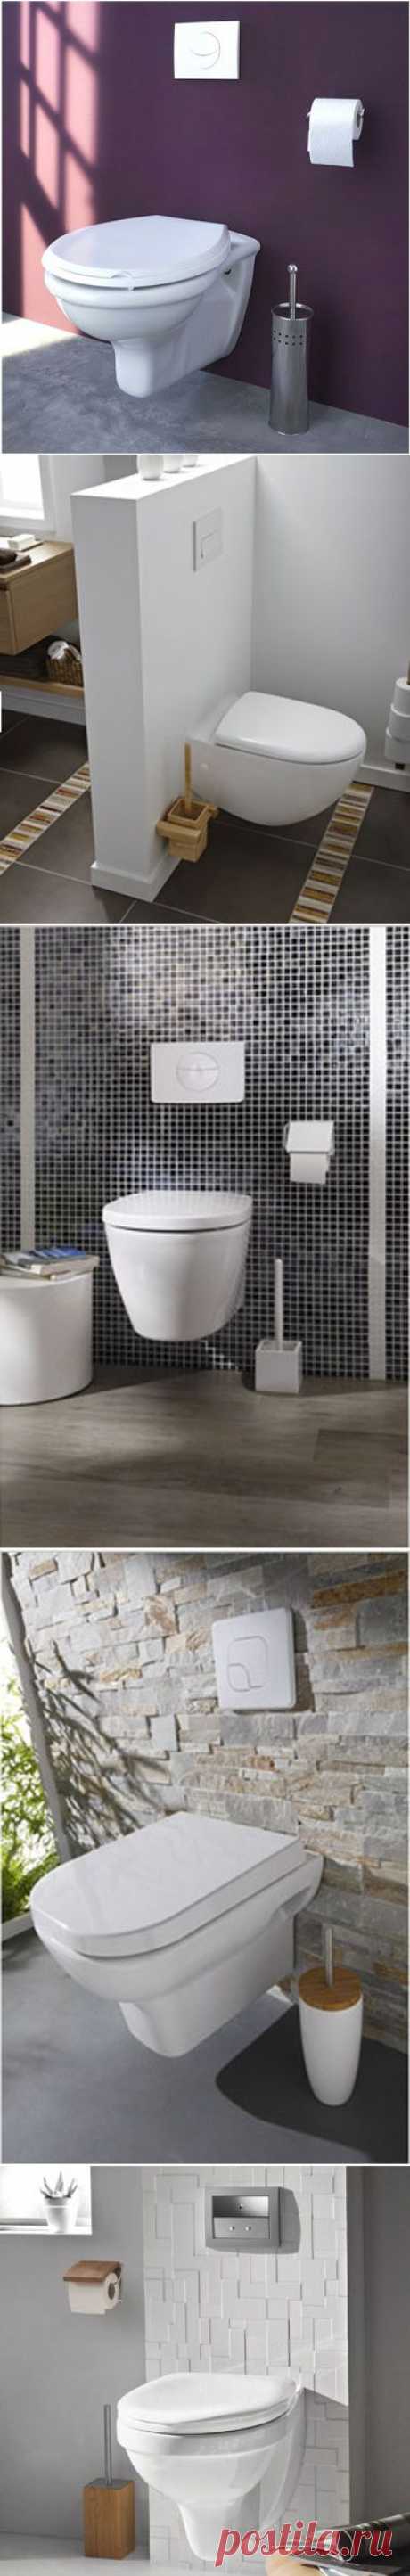 Déco WC Design avec Cuvette WC suspendu | Déco-Cool